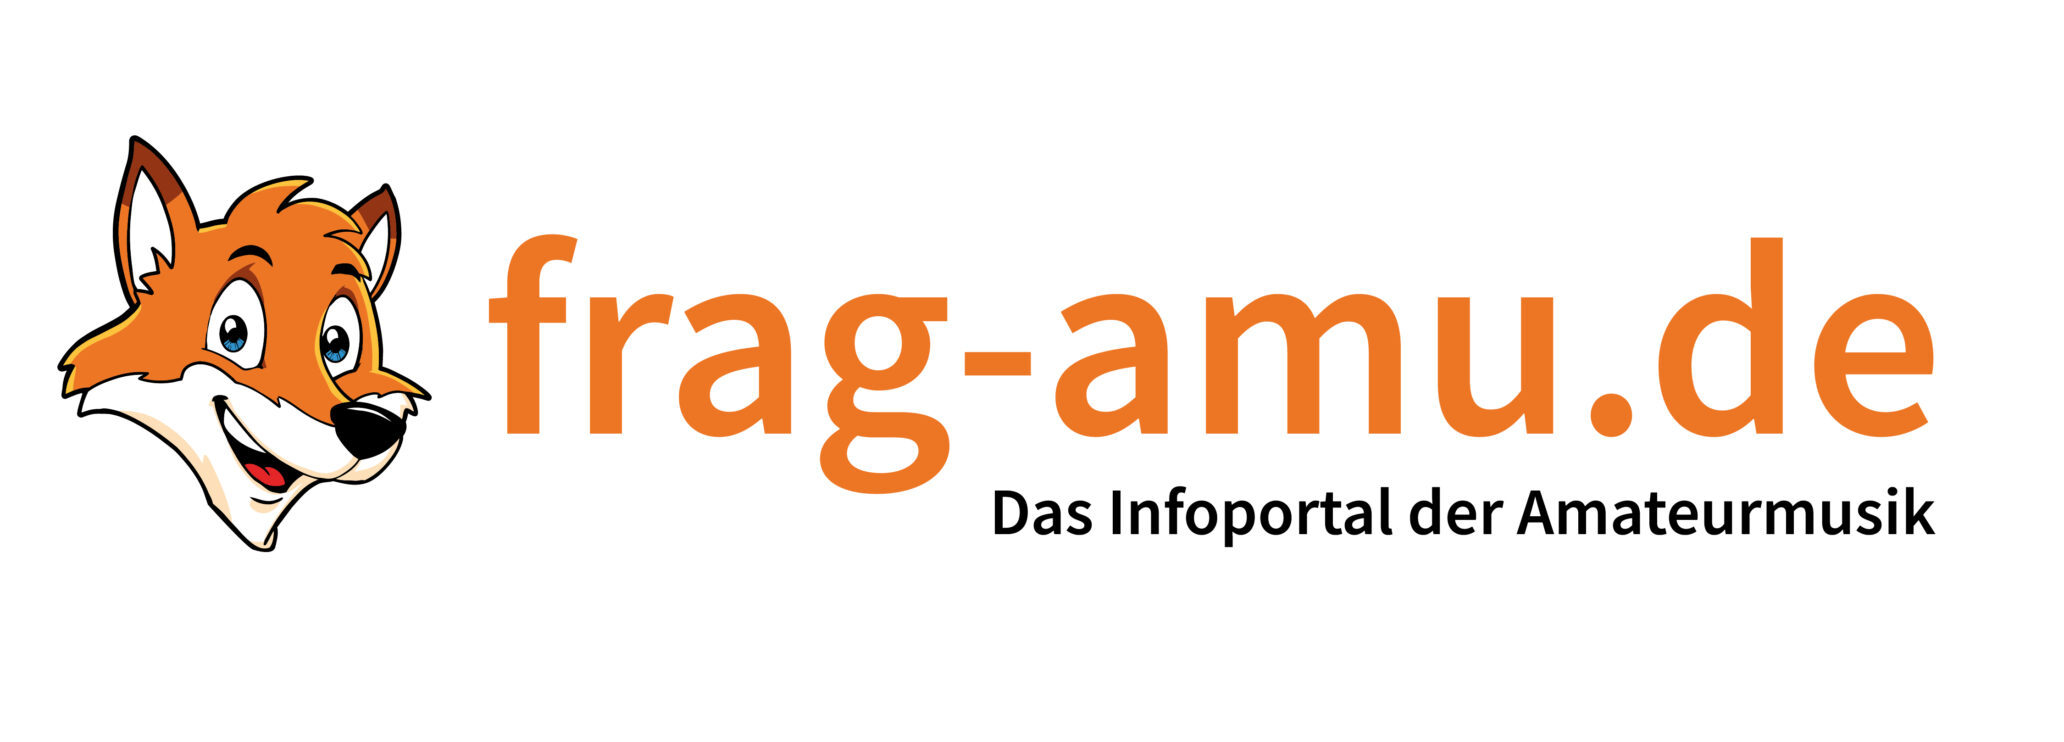 Logo der Website frag-amu.de, Kopf eines Fuchses, Schrift in orange und schwarz